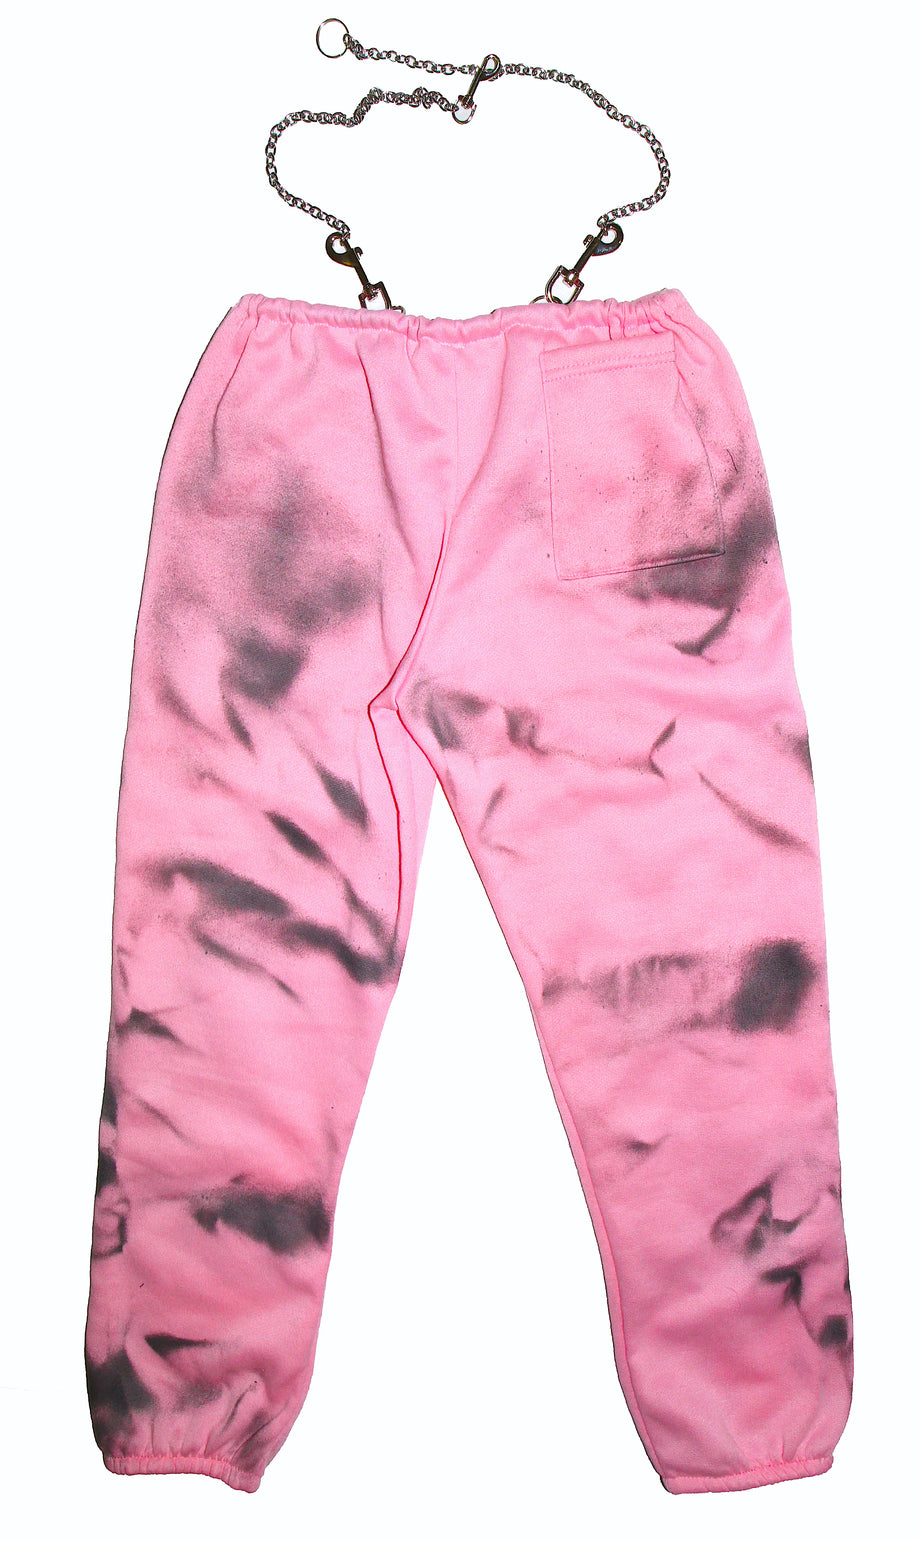 Sweatpants - Tie Dye Pink - Raspberry Republic - Buy better, buy